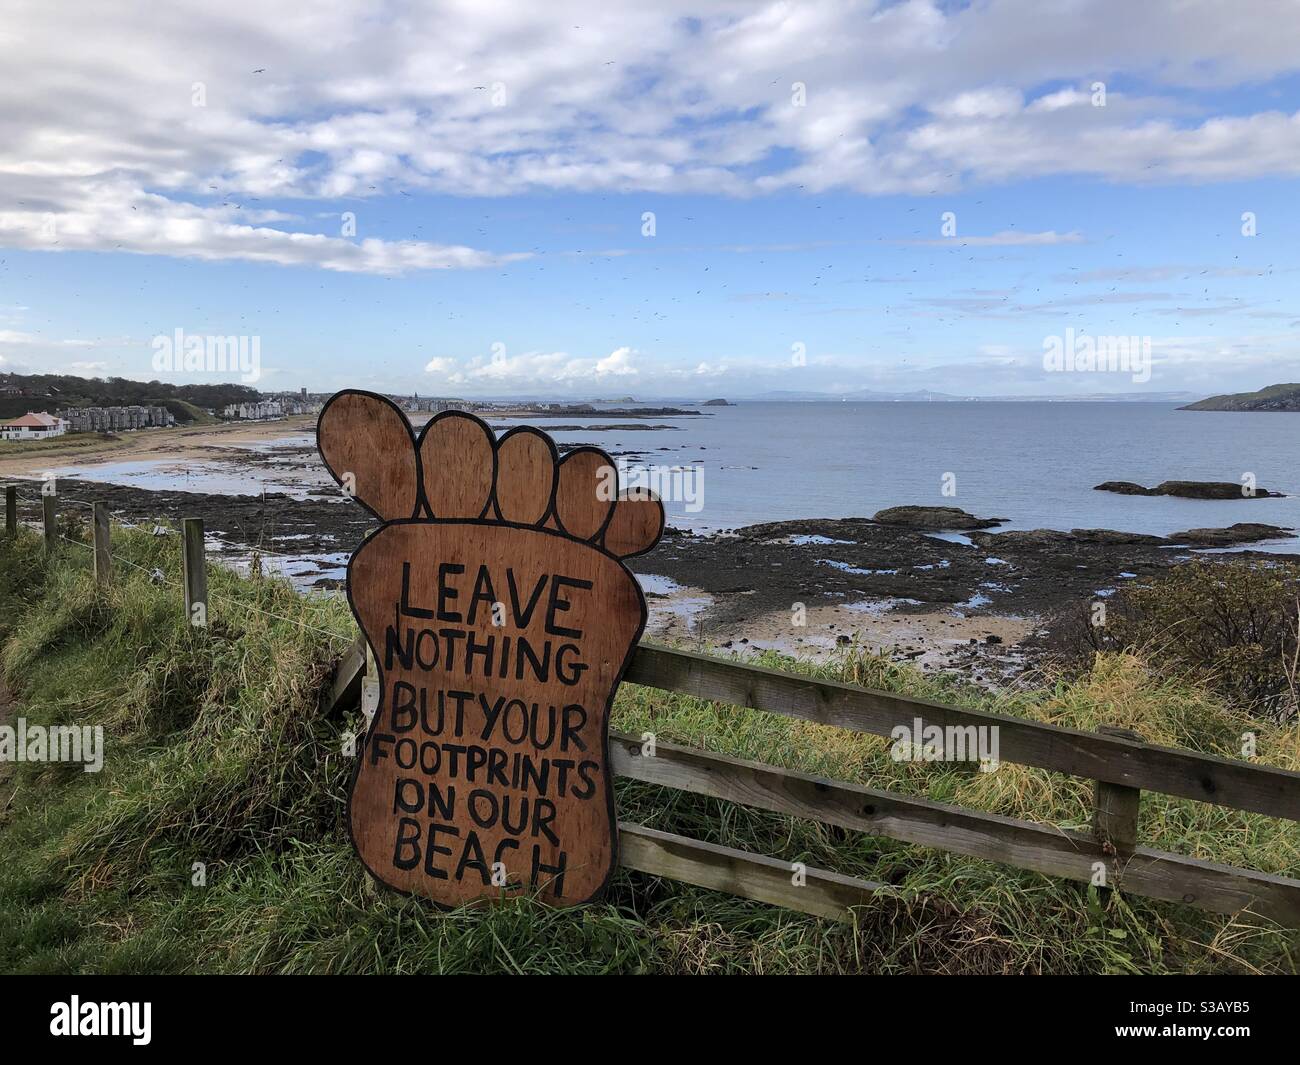 Plage propre - laisser seulement empreintes - signalisation de sensibilisation à l'environnement, North Berwick, Écosse Banque D'Images